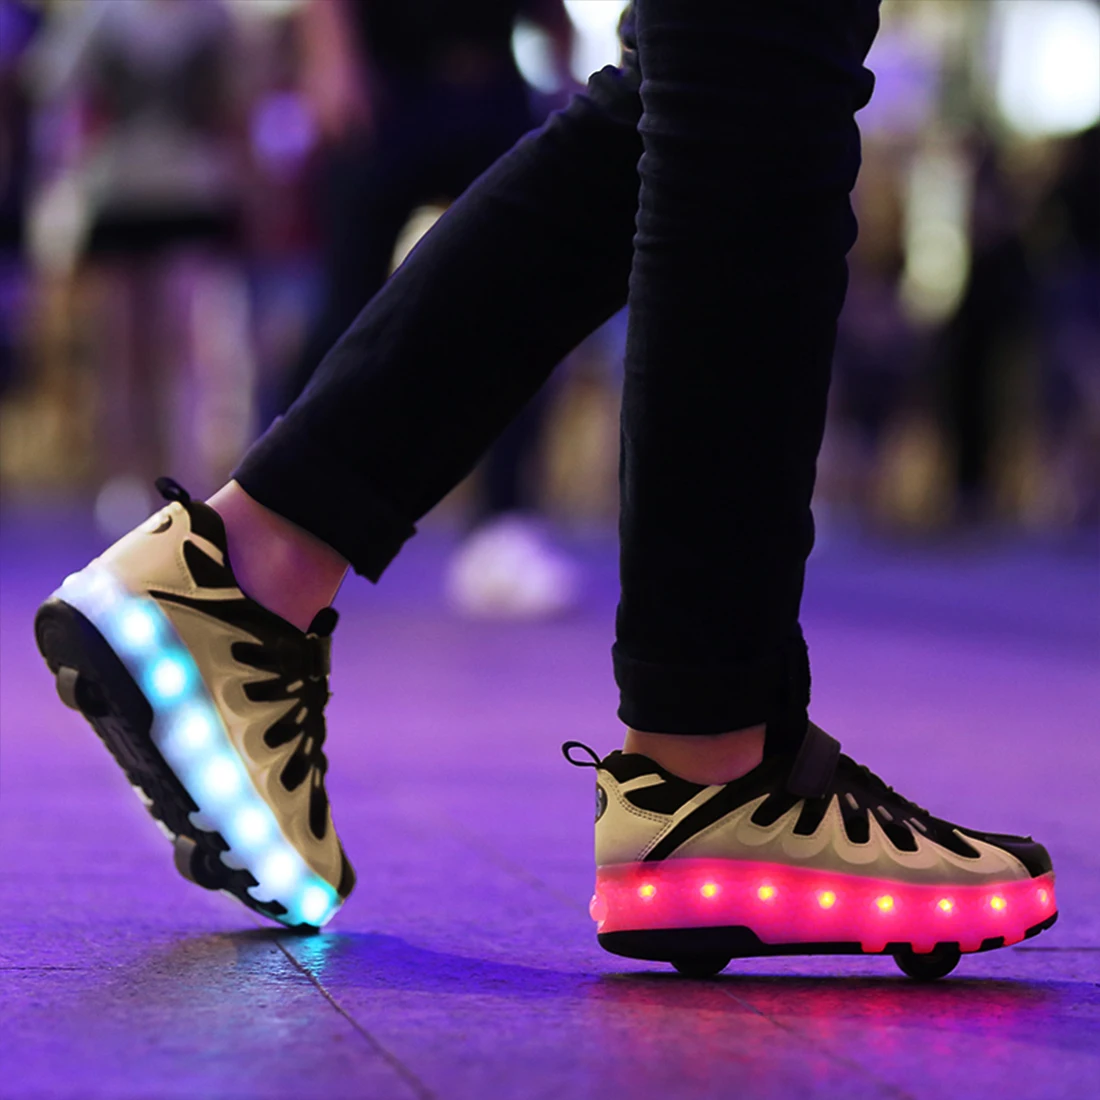 Детская обувь для катания на коньках; детские кроссовки для катания на коньках; Patins patines de 4 ruedas; обувь для мальчиков и девочек; Patins Heelys светодиодный мигающий свет; Zapatillas